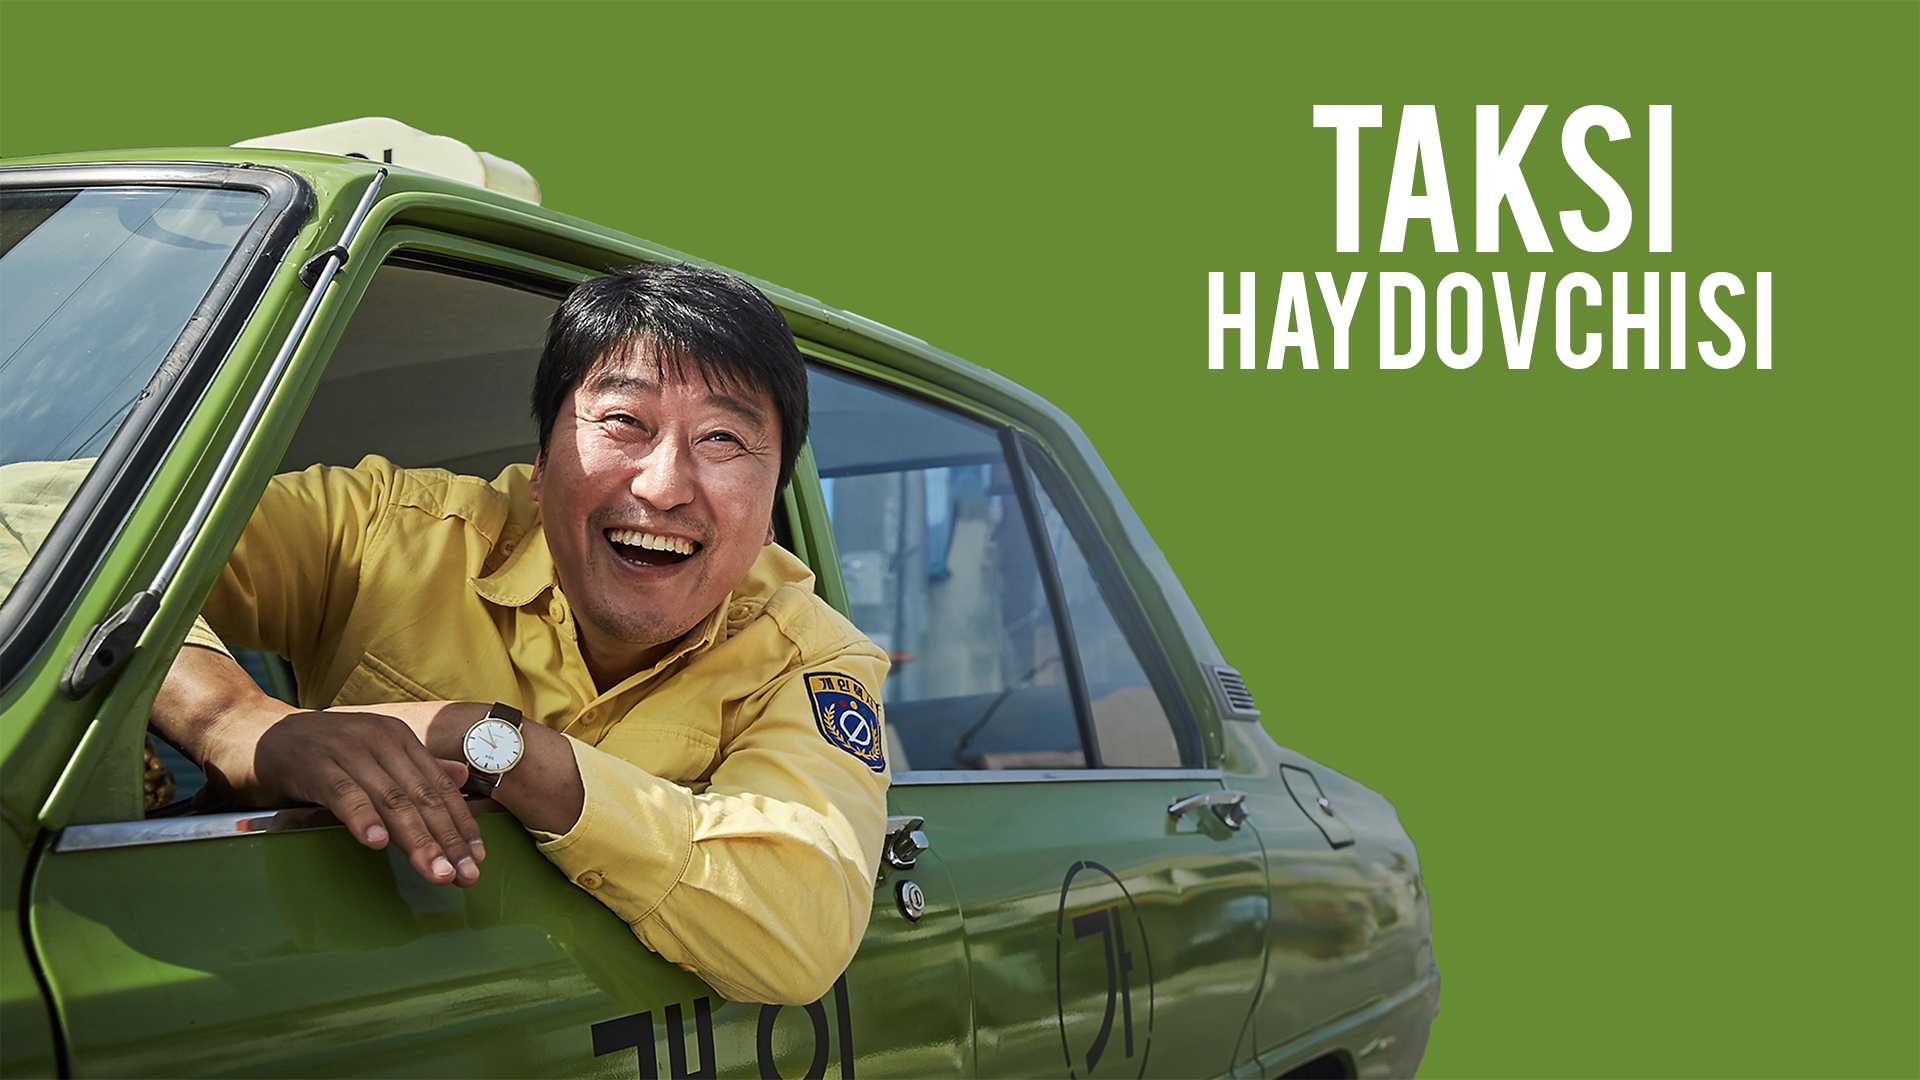 Taksi haydovchisi